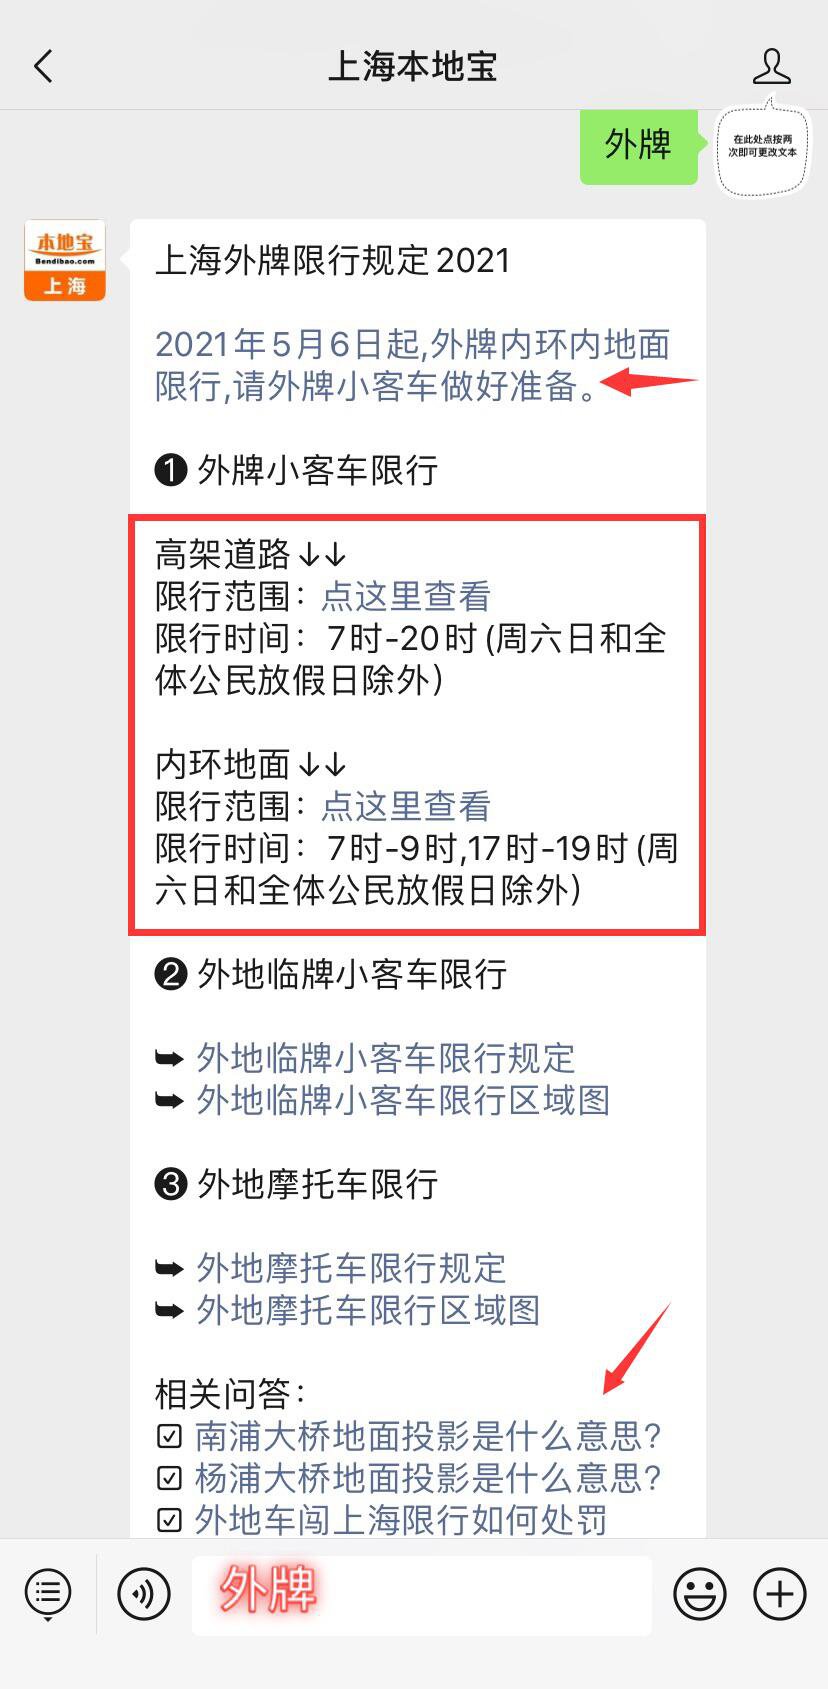 2021上海内环限行处罚规定(扣分+罚款)